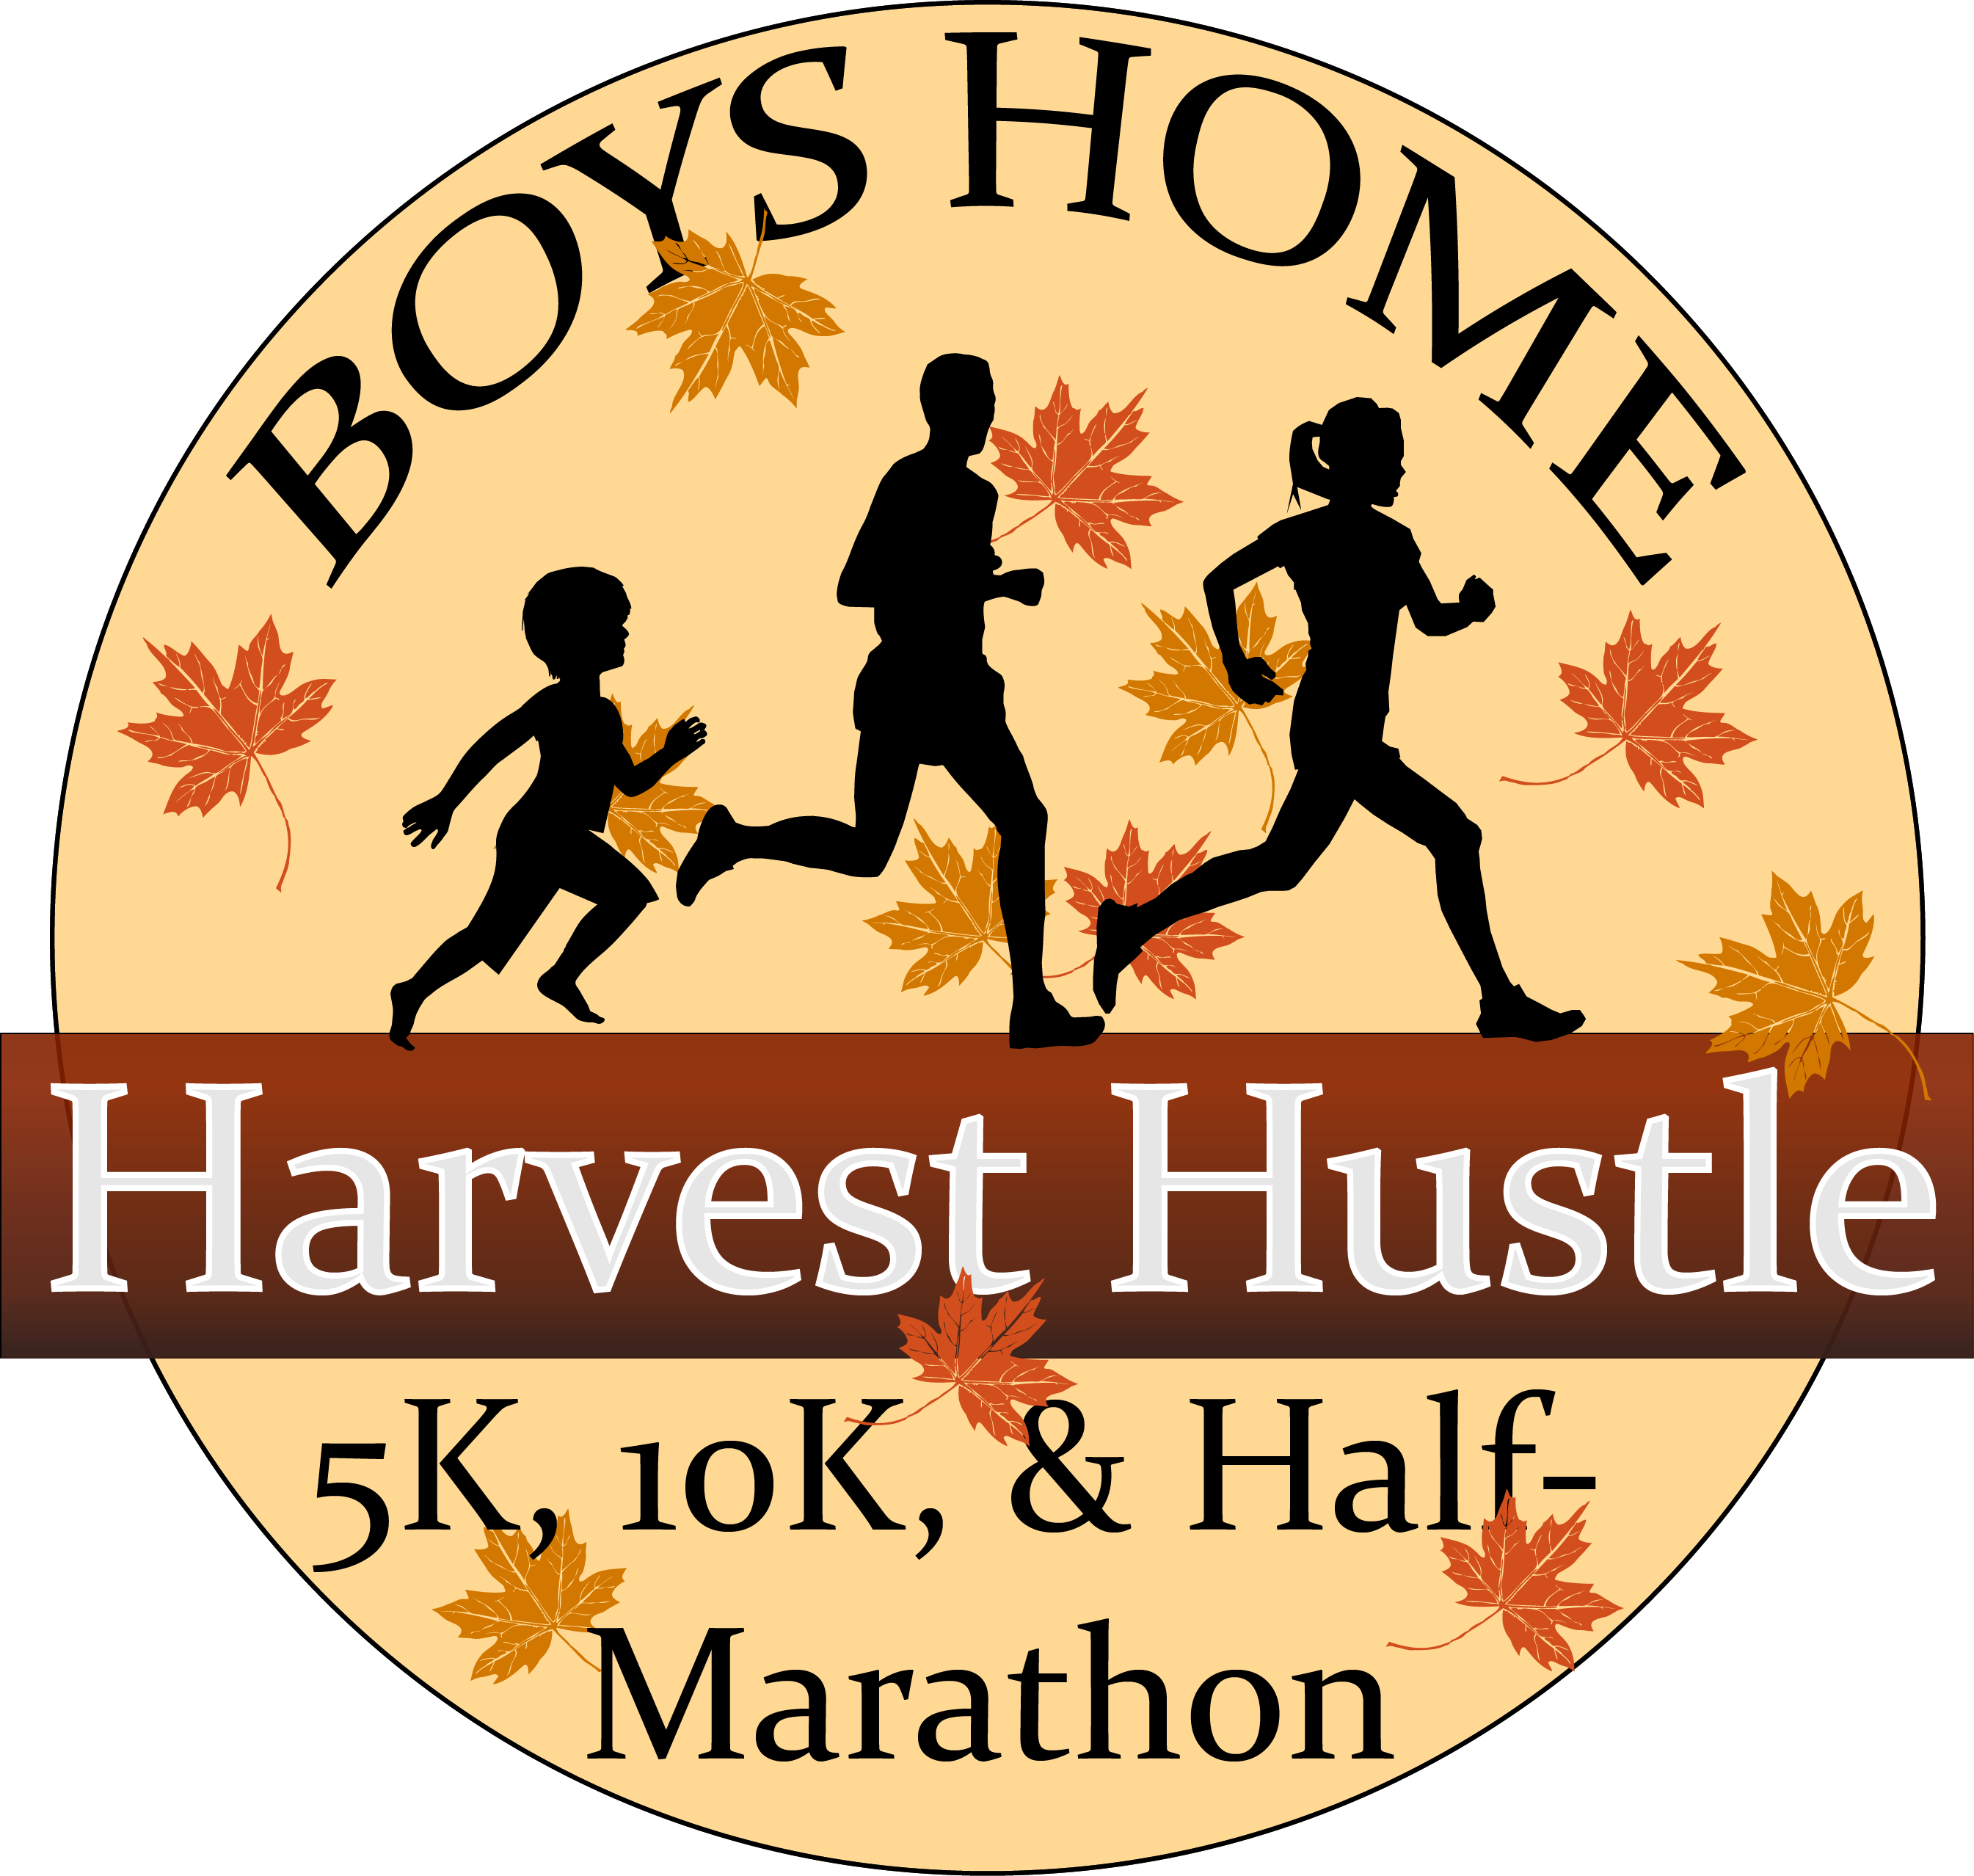 Boys Home Harvest Hustle logo on RaceRaves